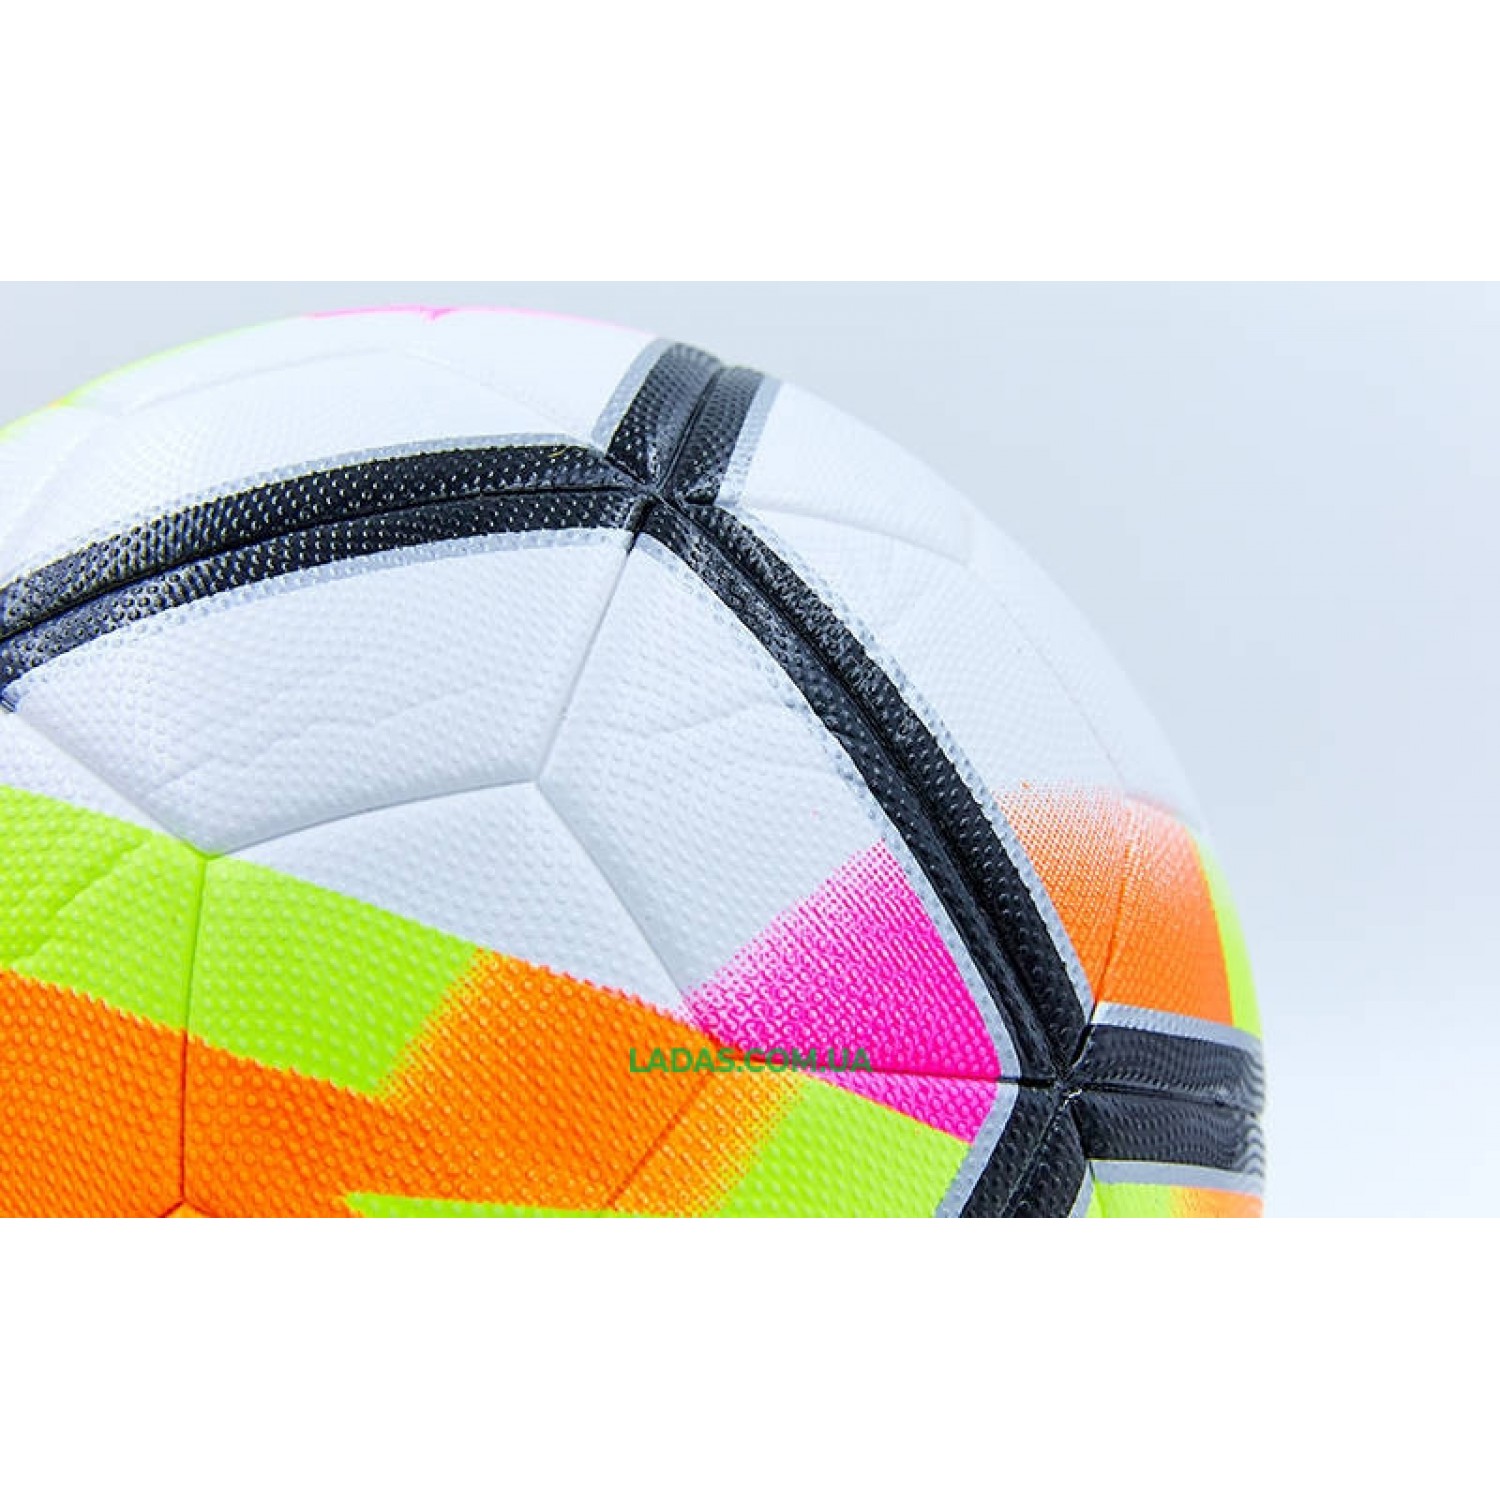 Мяч футбольный №5 PU ламин клееный PREMIER LEAGUE 2018 La Liga FB-6653